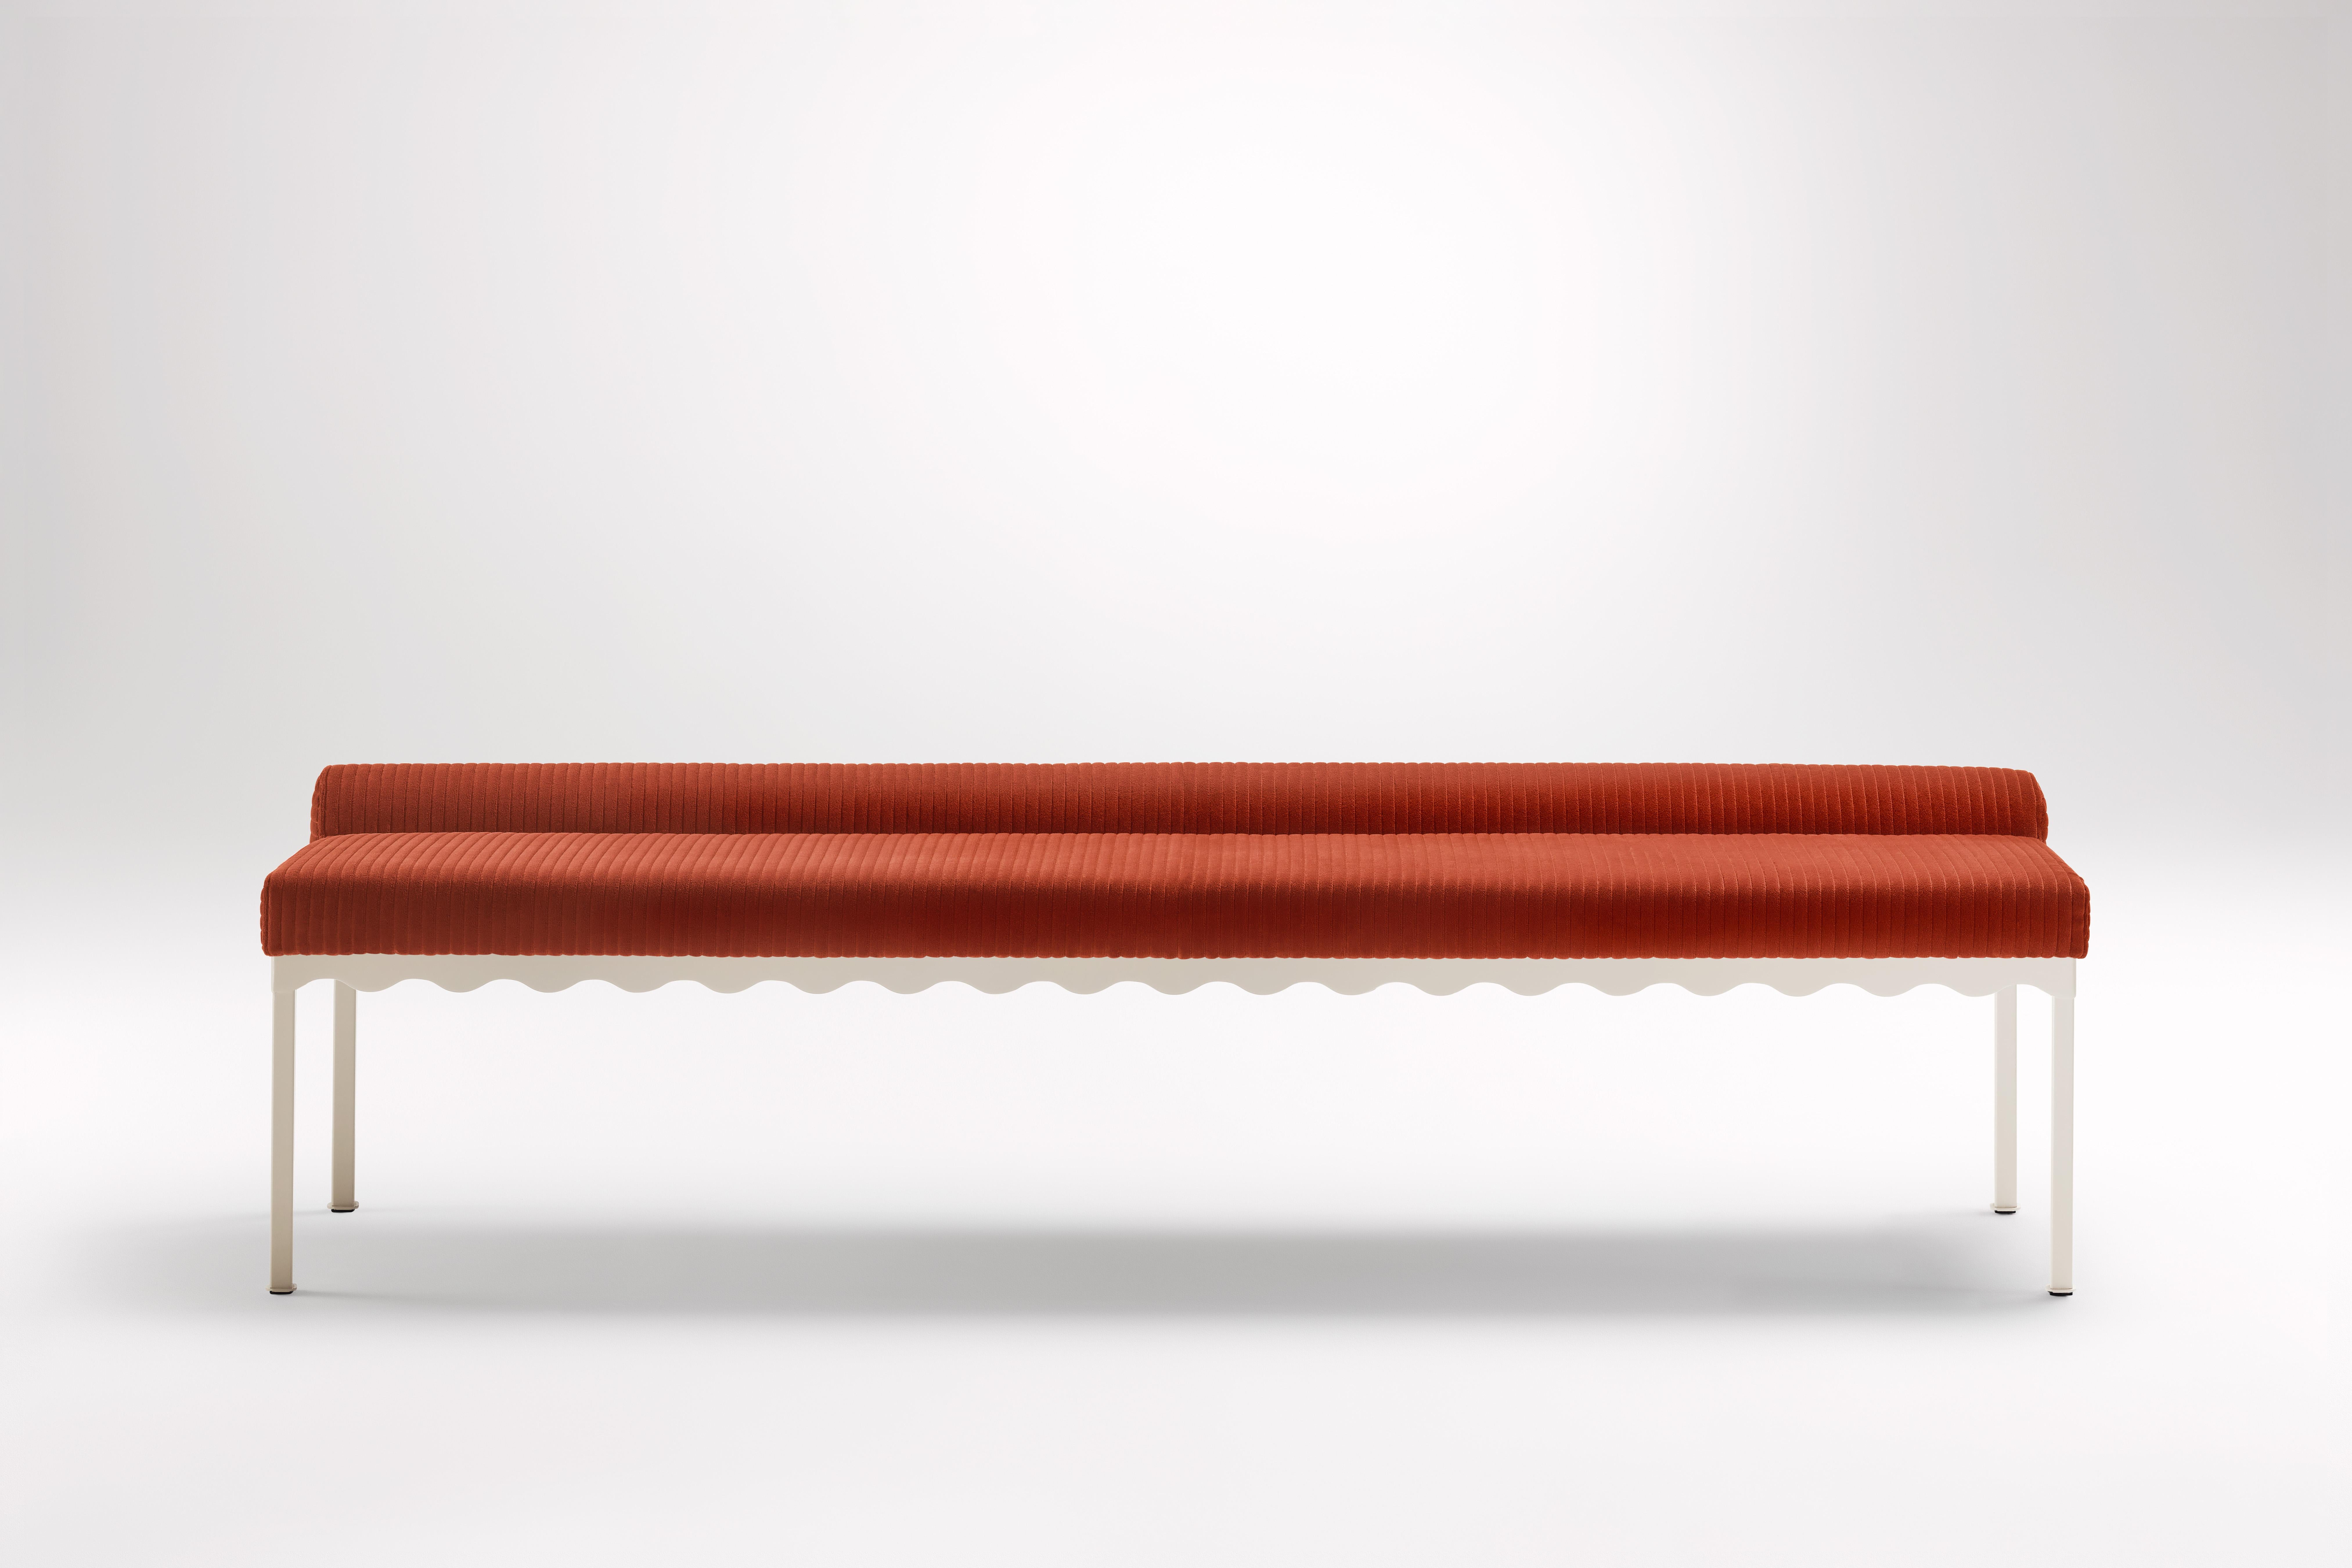 Sanguine Bellini 2040 Bank von Coco Flip
Abmessungen: T 204 x B 54 x H 52,5 cm
MATERIALIEN: Holz / gepolsterte Platten, pulverbeschichteter Stahlrahmen. 
Gewicht: 30 kg
Rahmen-Oberflächen: Textura Paperbark.

Coco Flip ist ein Studio für Möbel- und